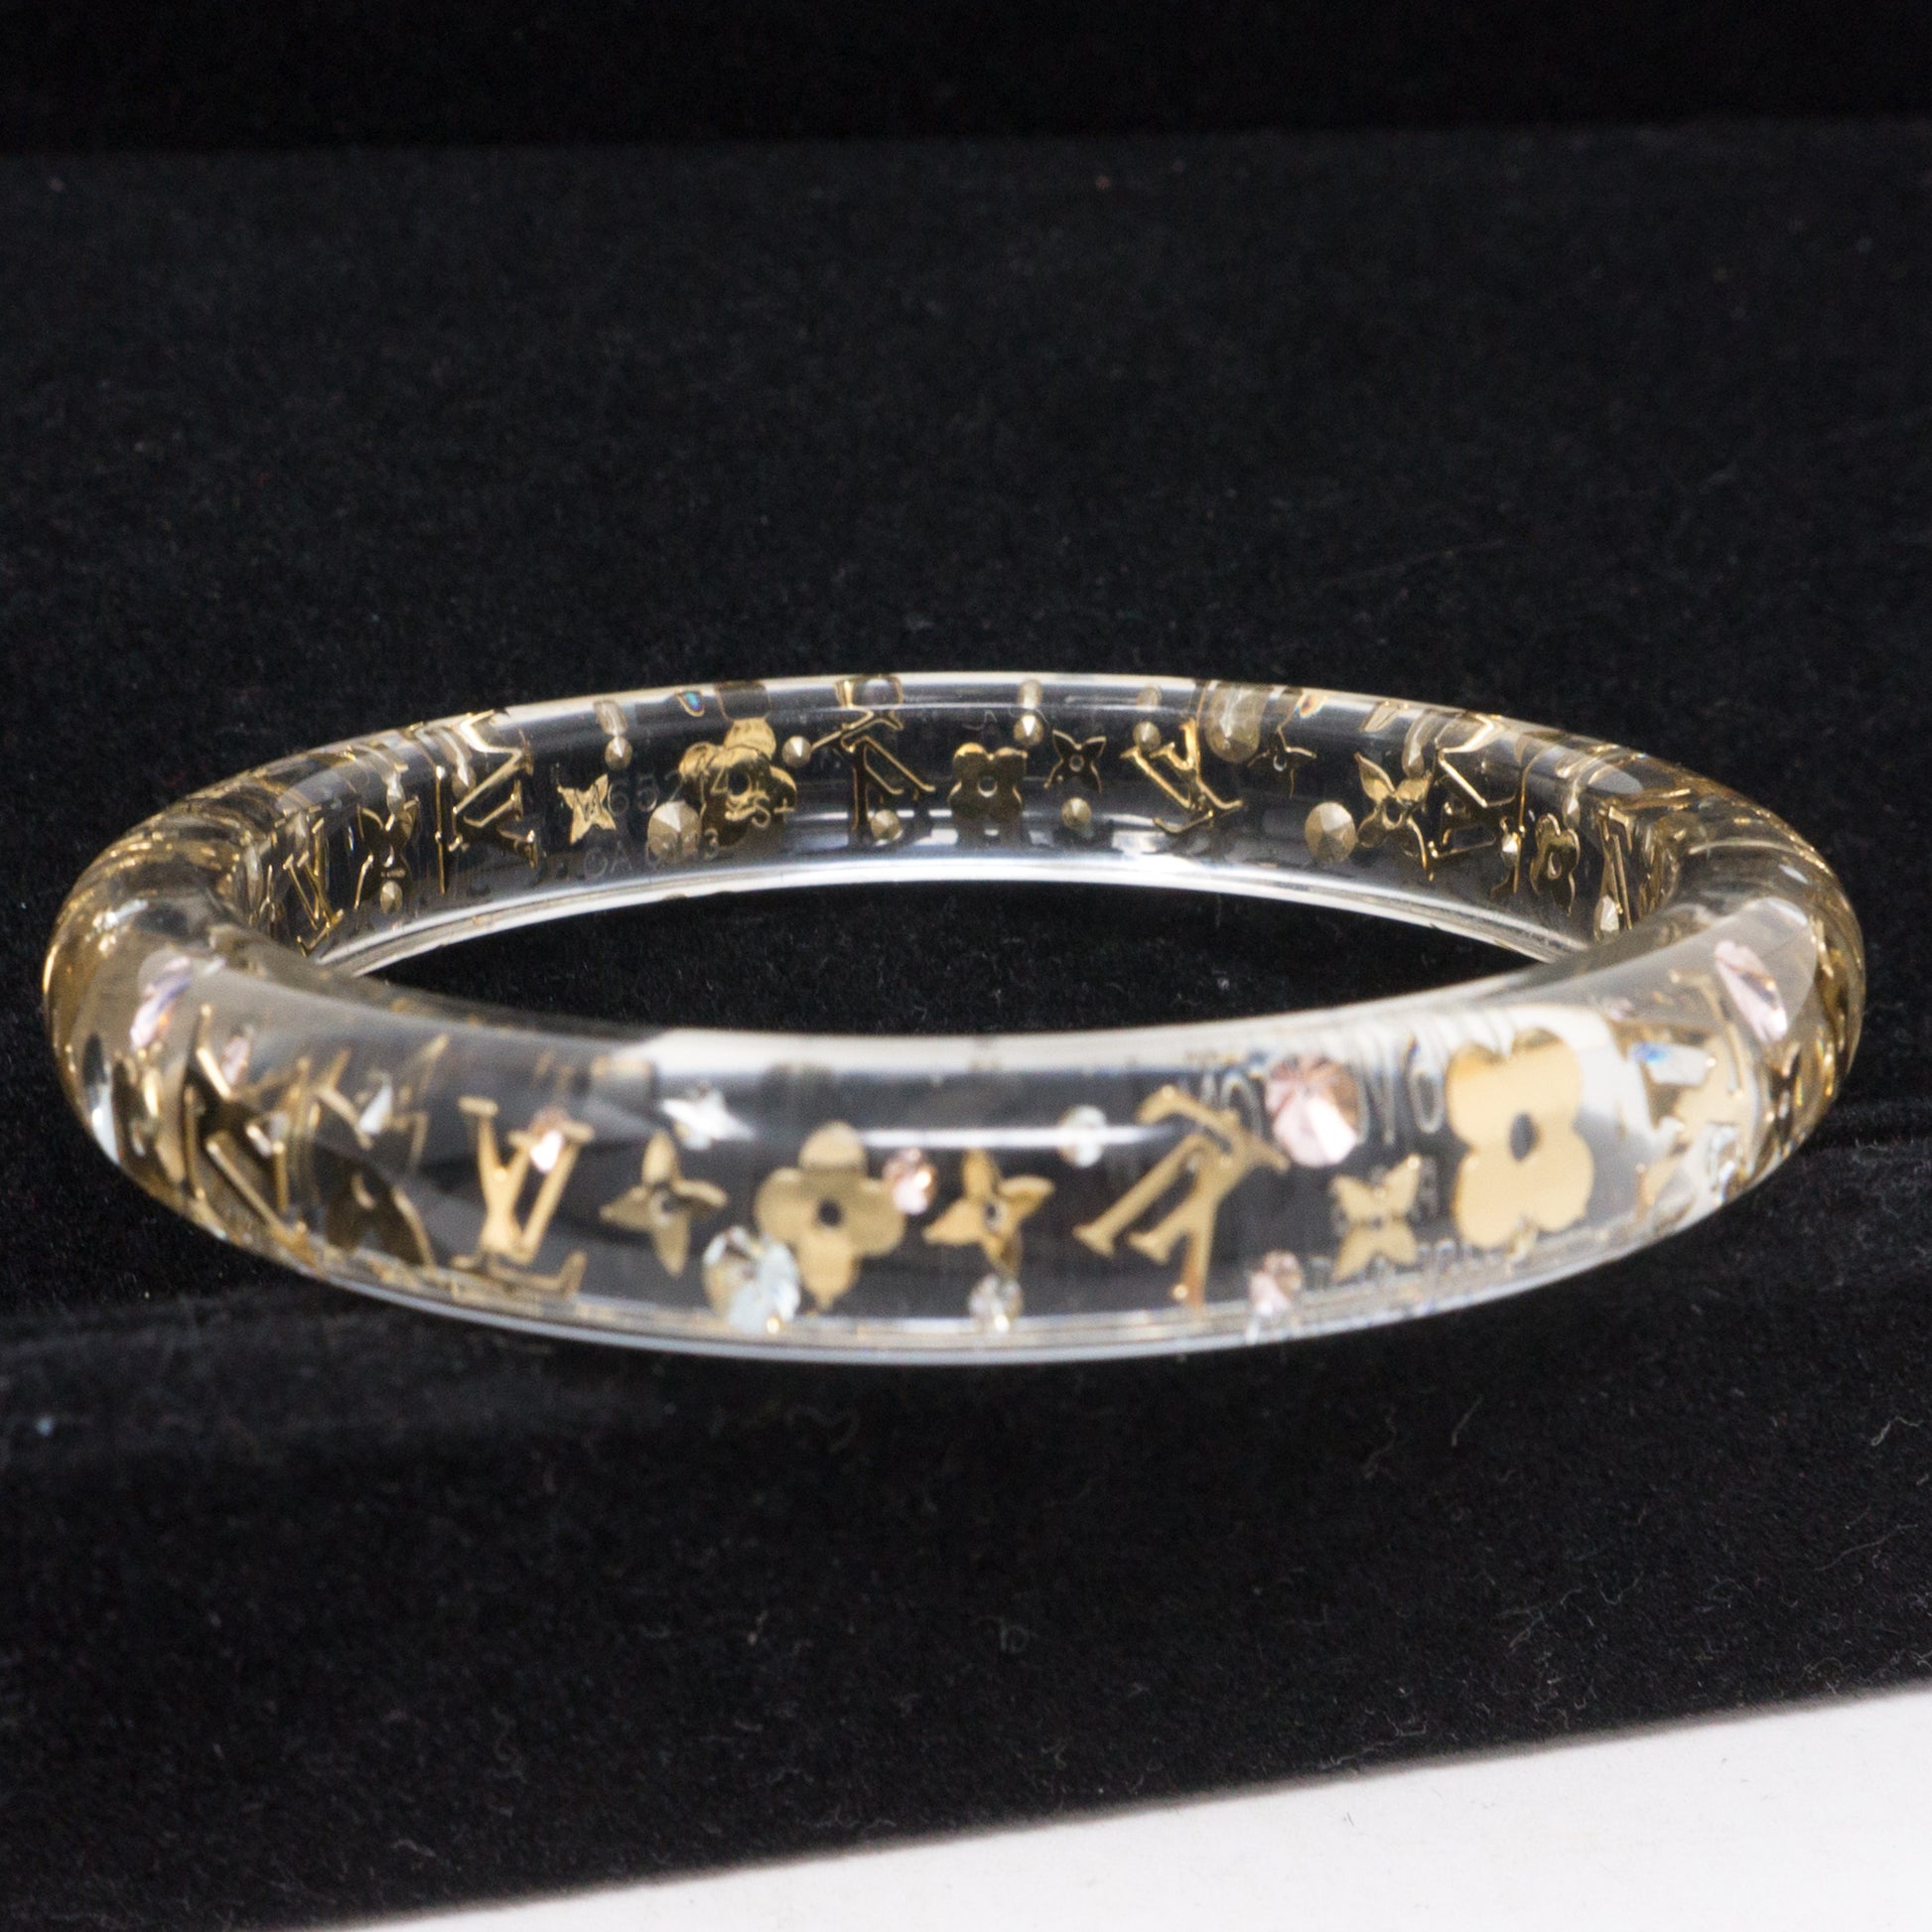 Inclusion bracelet Louis Vuitton Gold in Plastic - 27735223